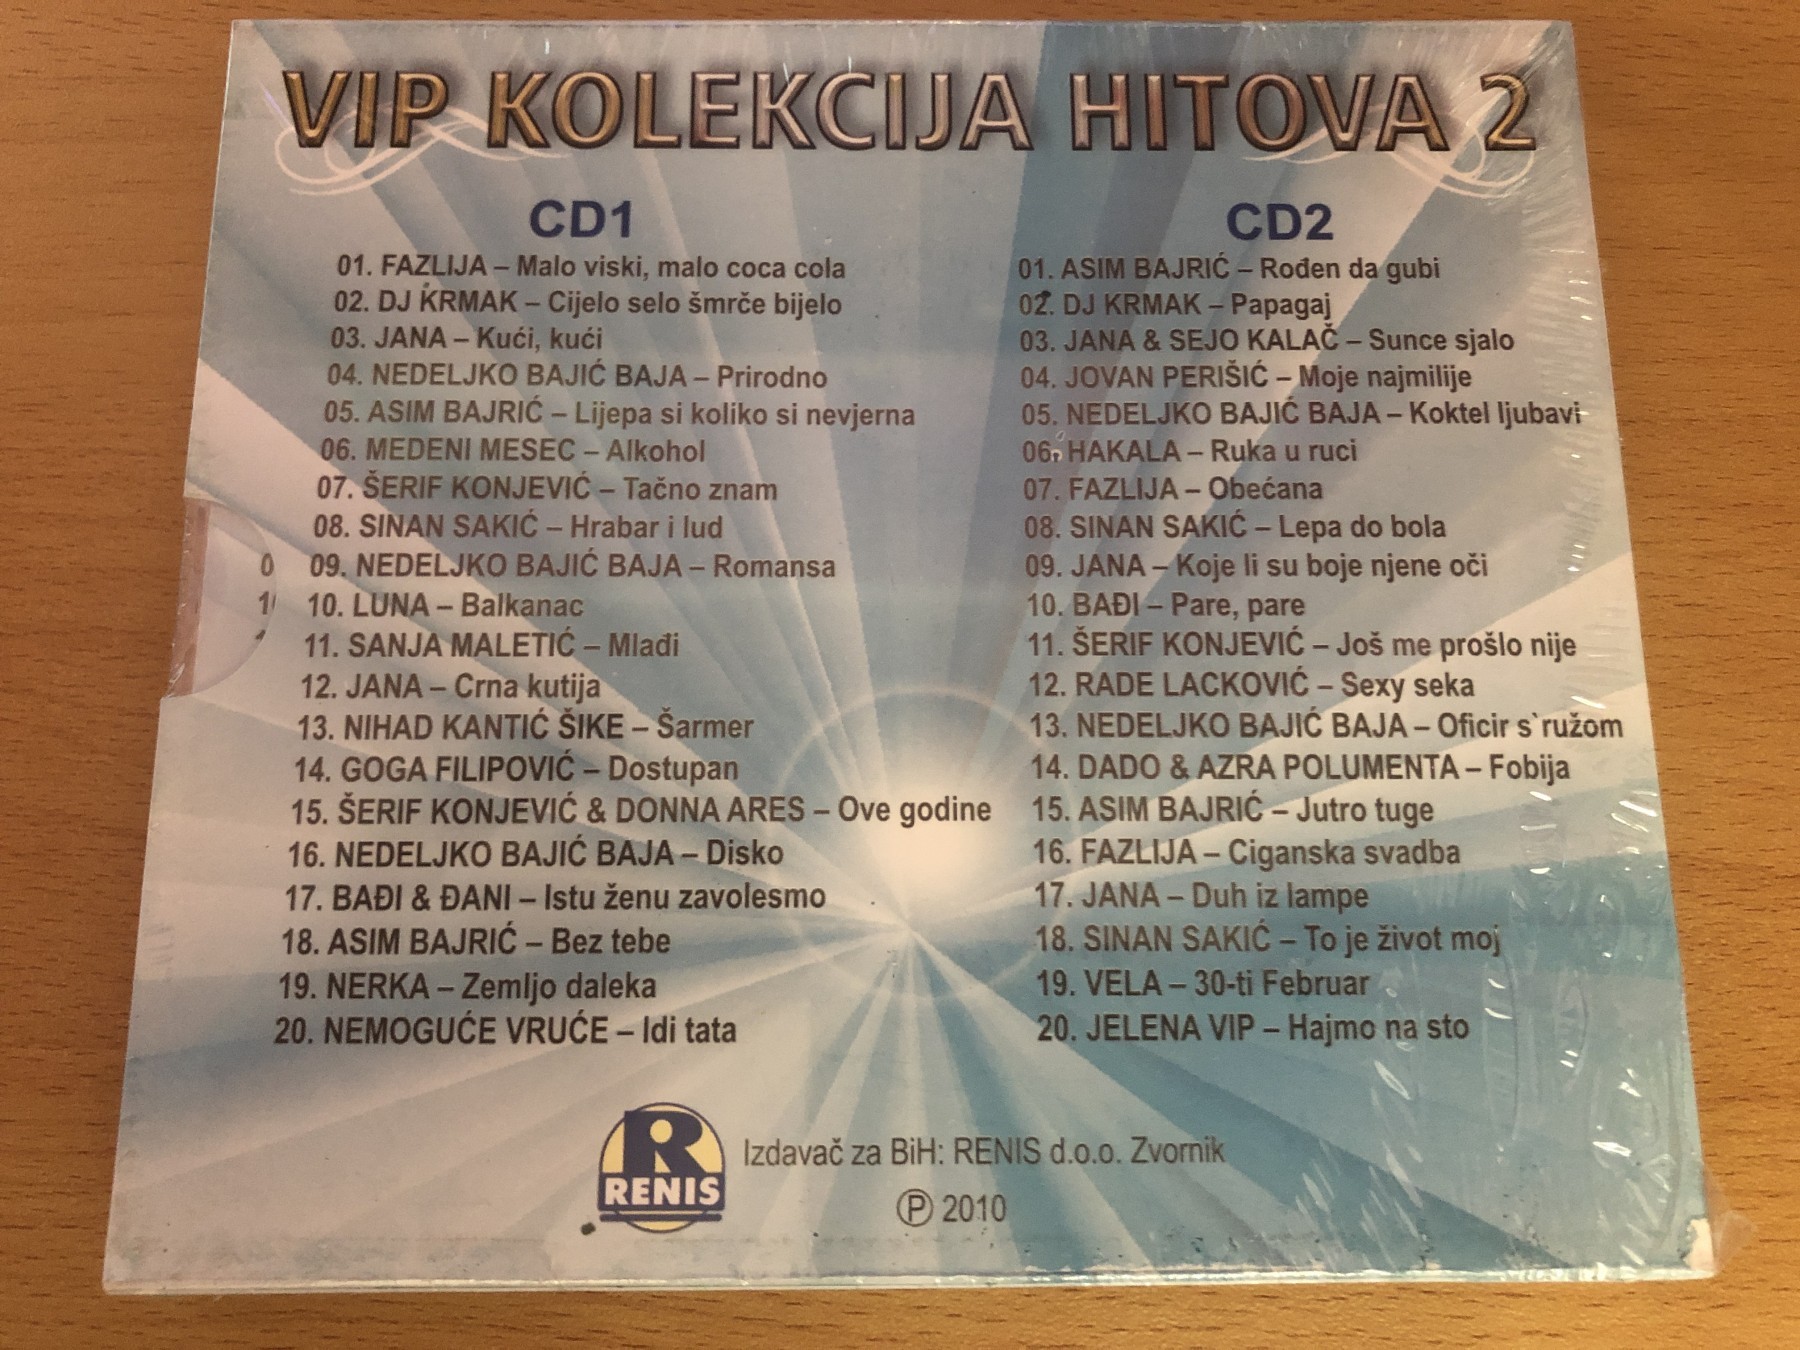 VIP Kolekcija Hitova 2 - Kupindo.com (57768243)